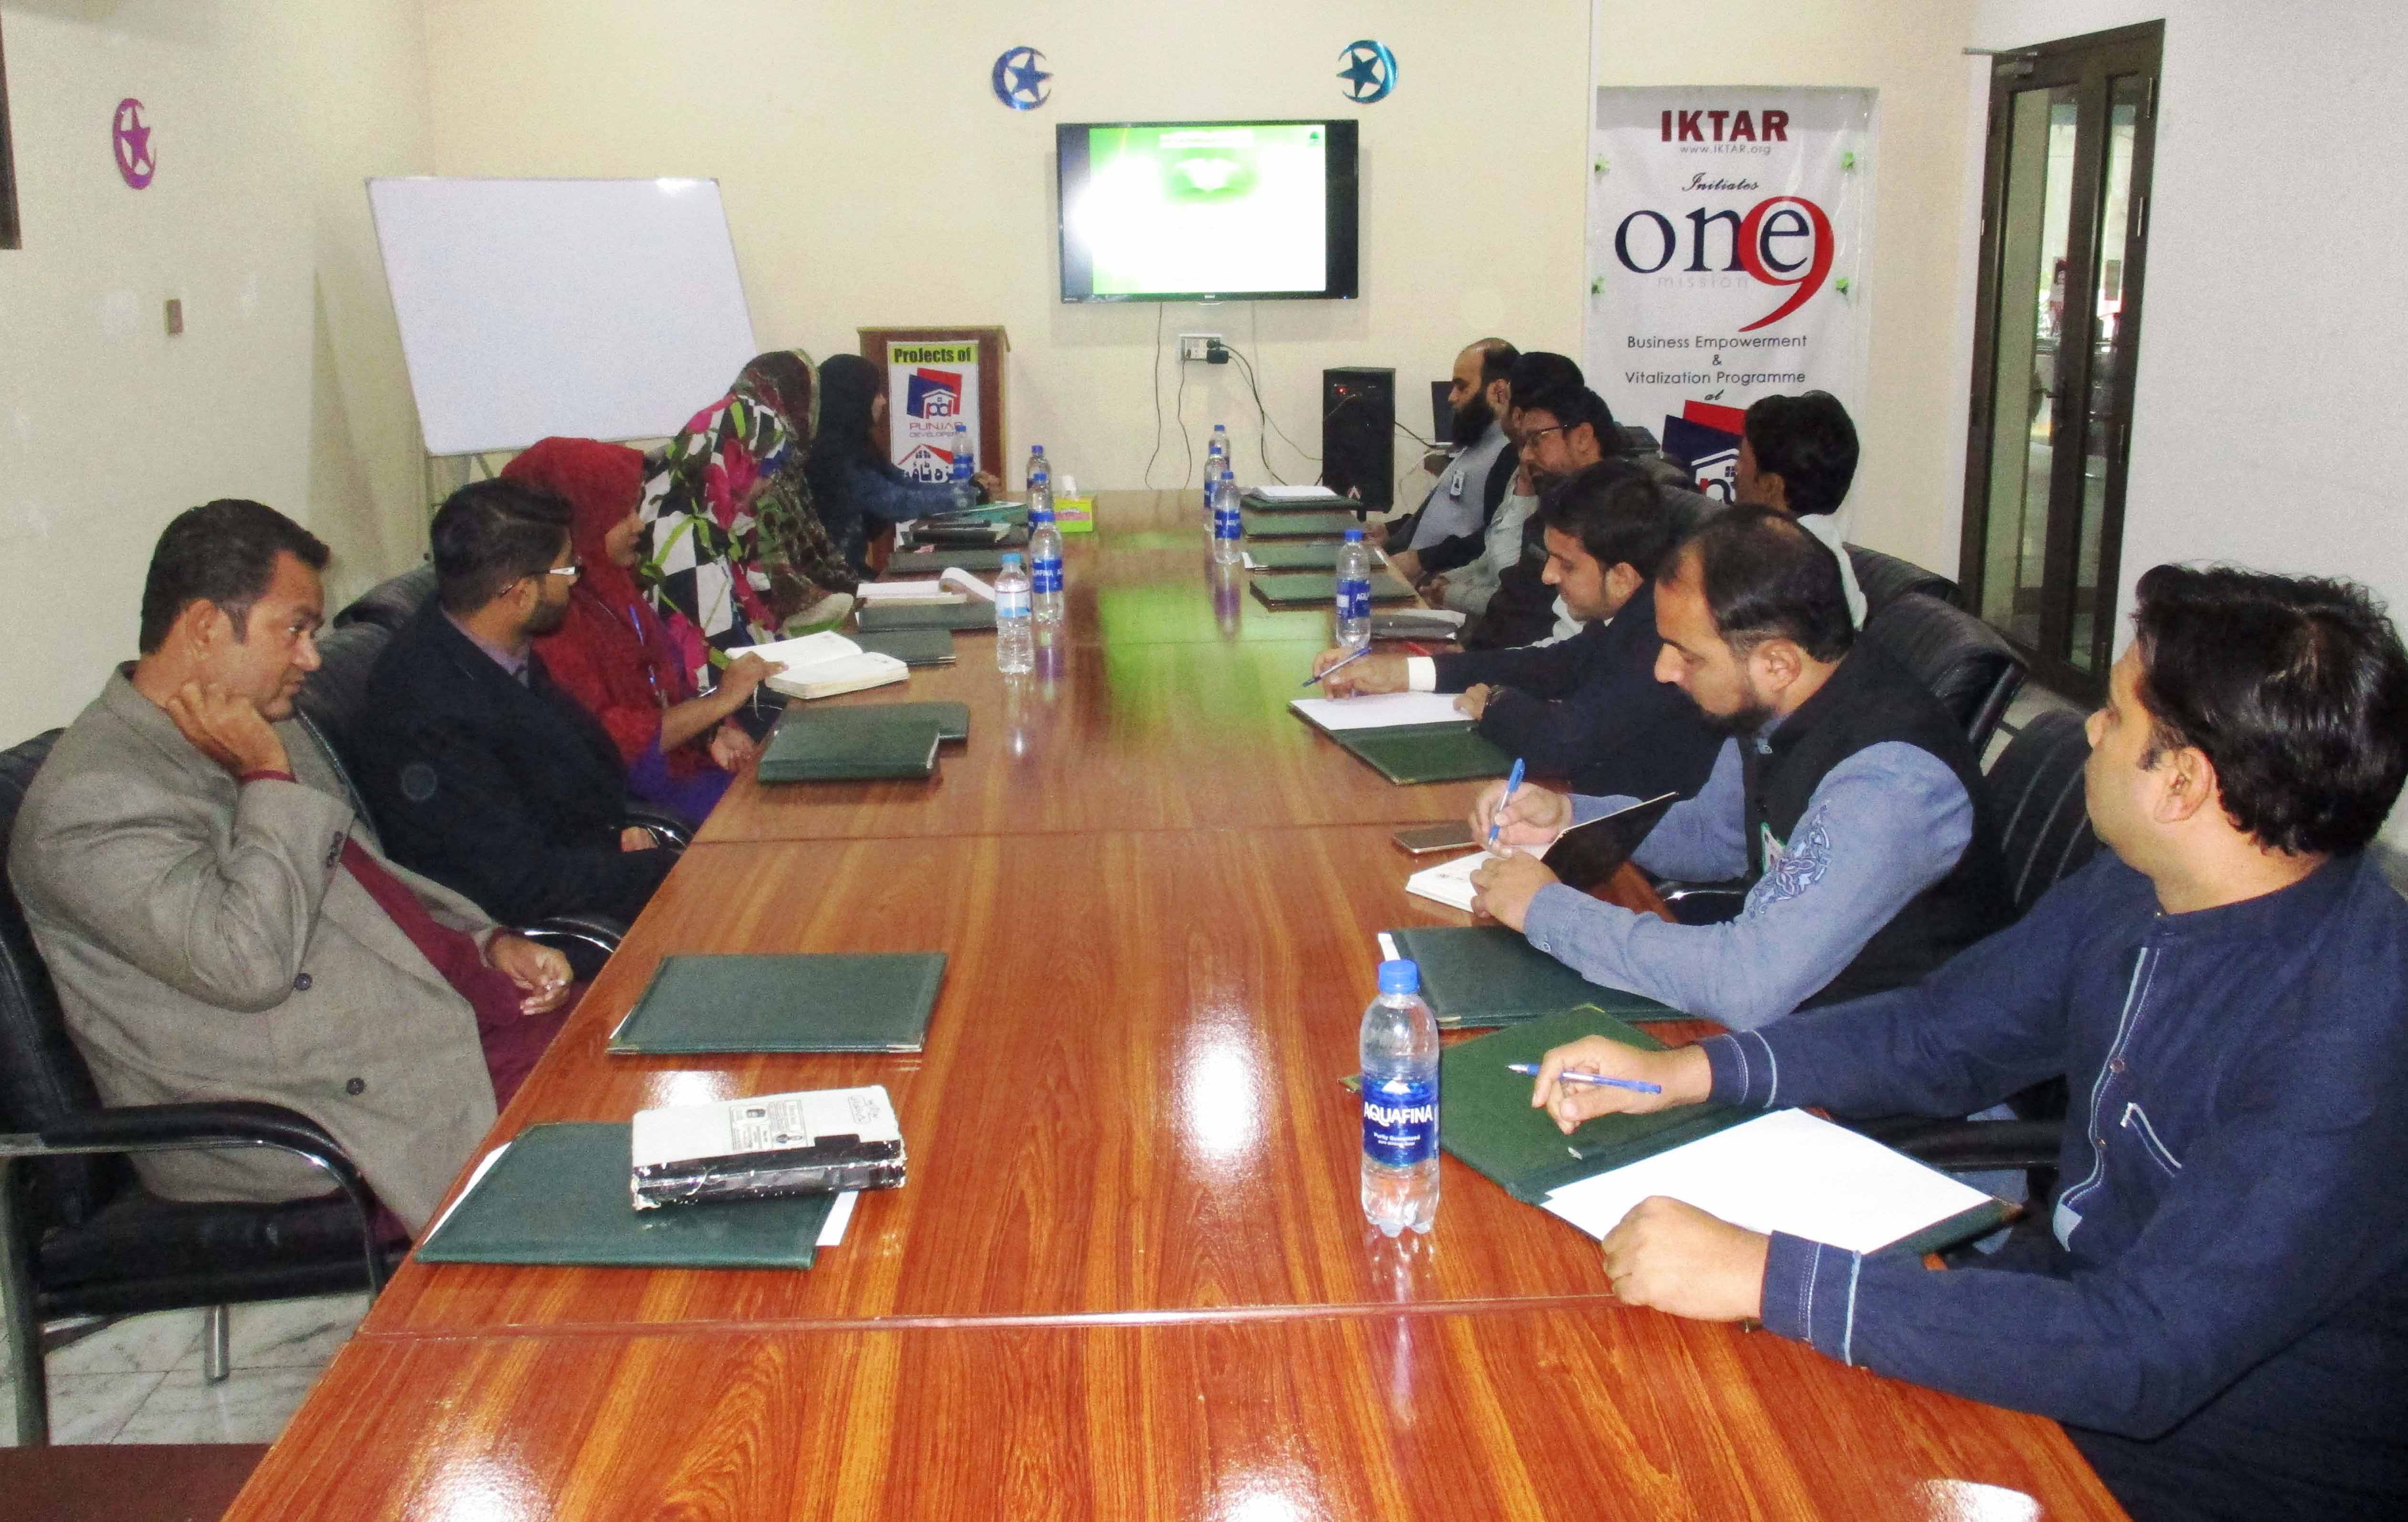 Weekly Staff Meeting held in Punjab Developers Office